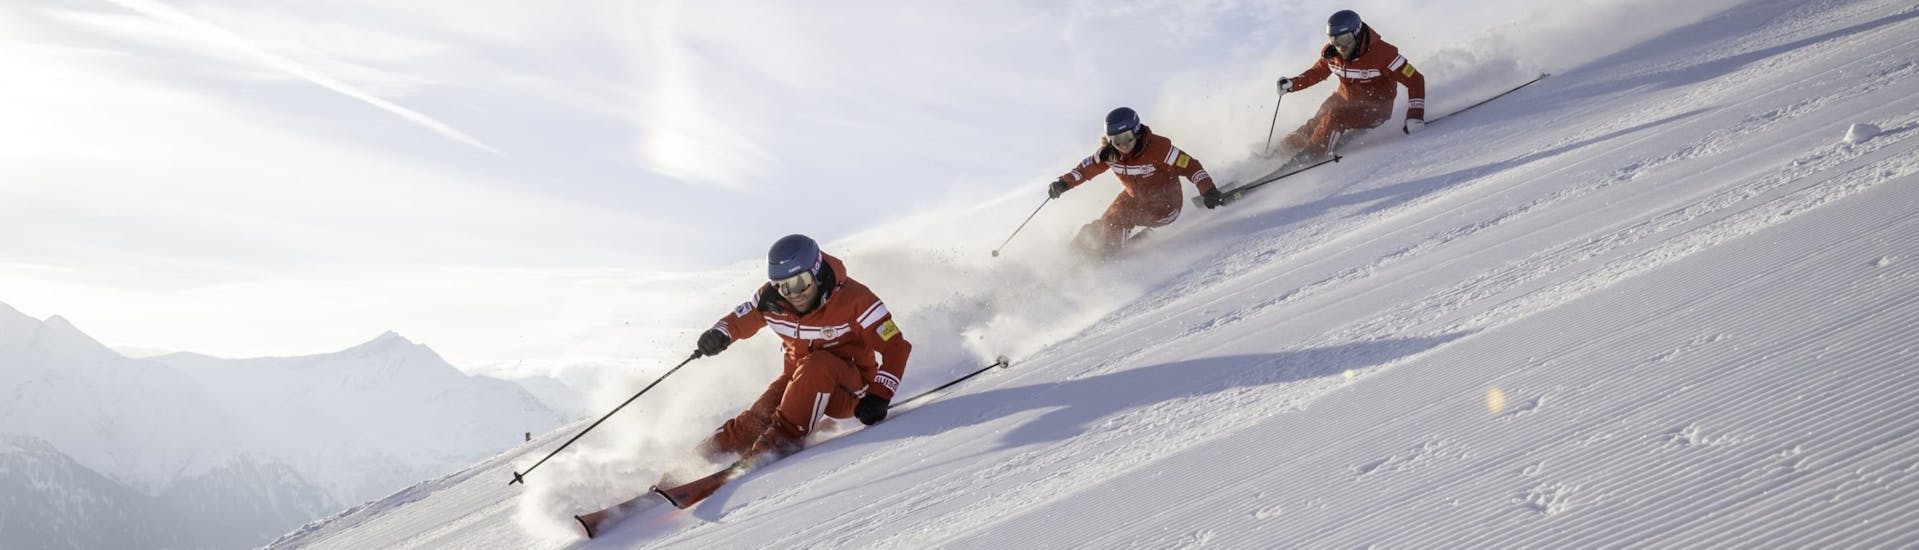 Cours particulier de ski Adultes dès 14 ans.